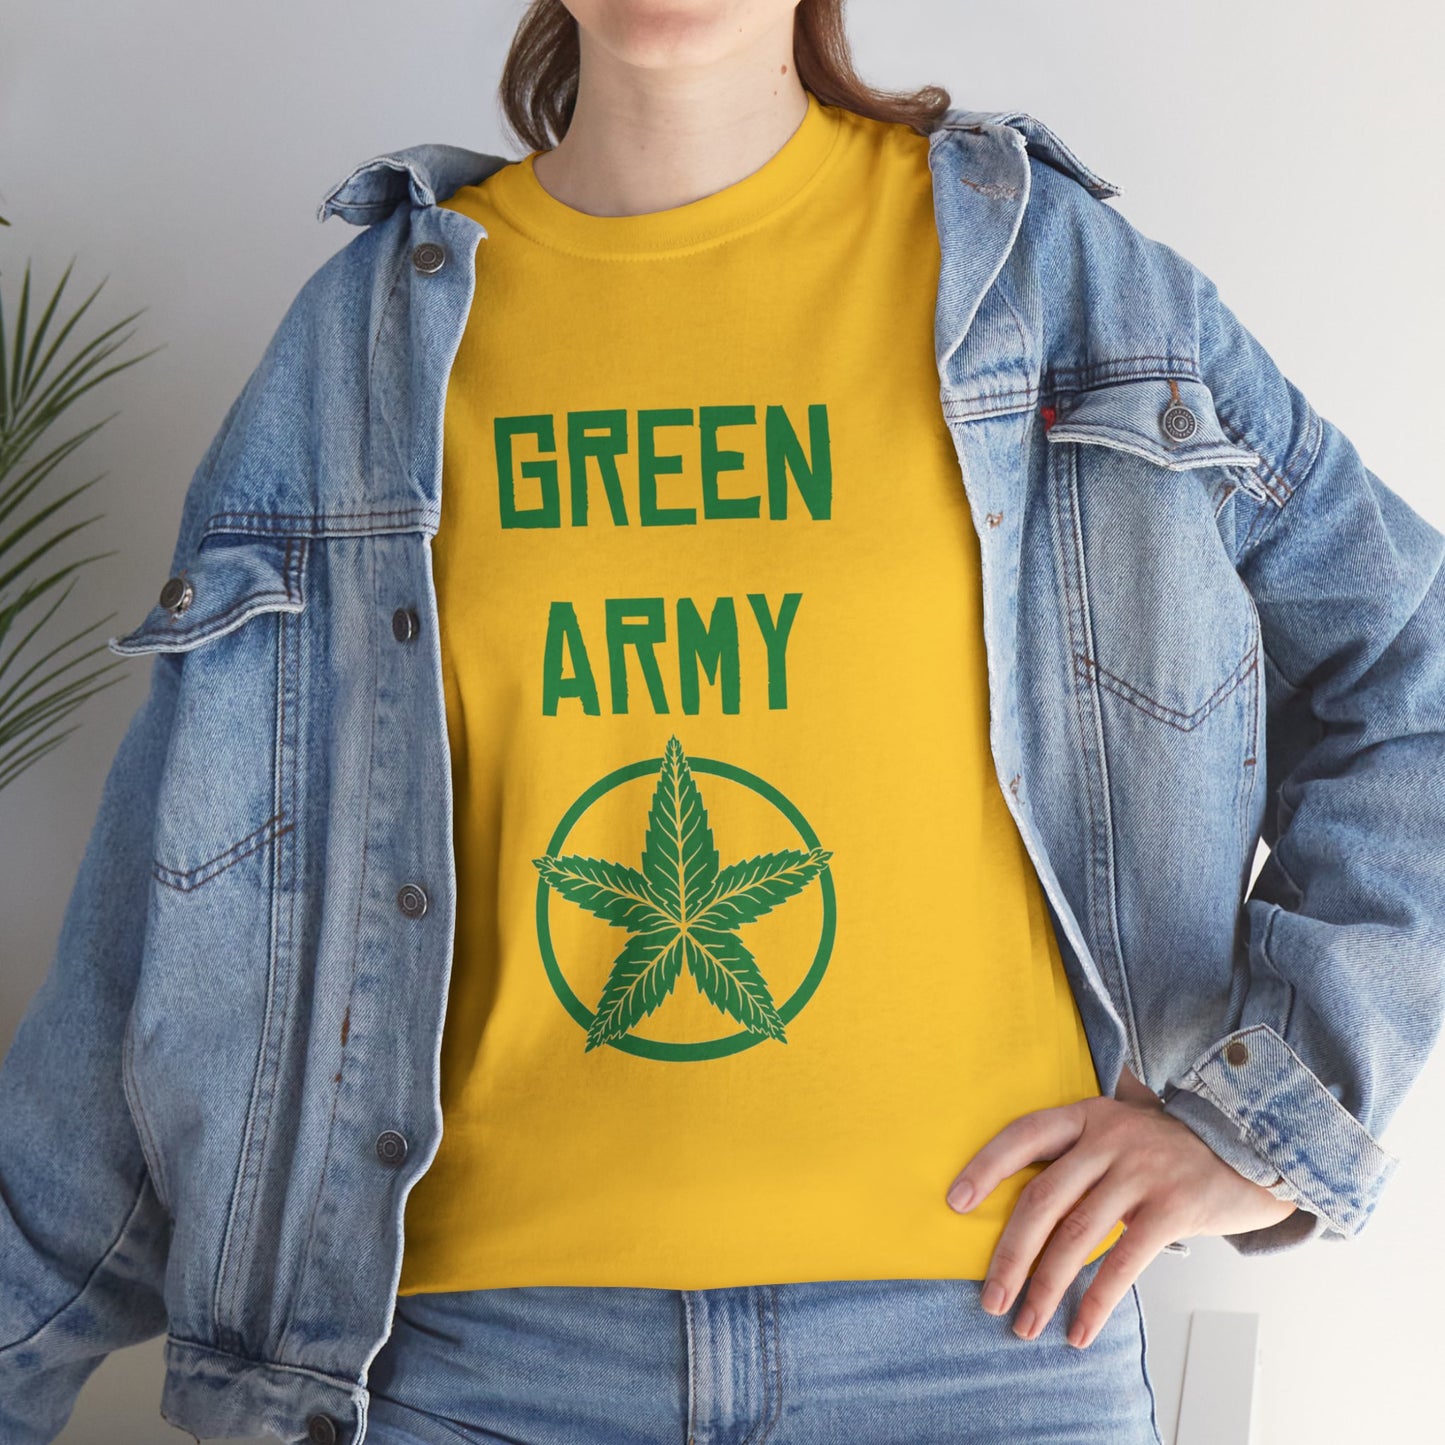 Green Army Star Leaf Unisex Heavy Cotton Tee